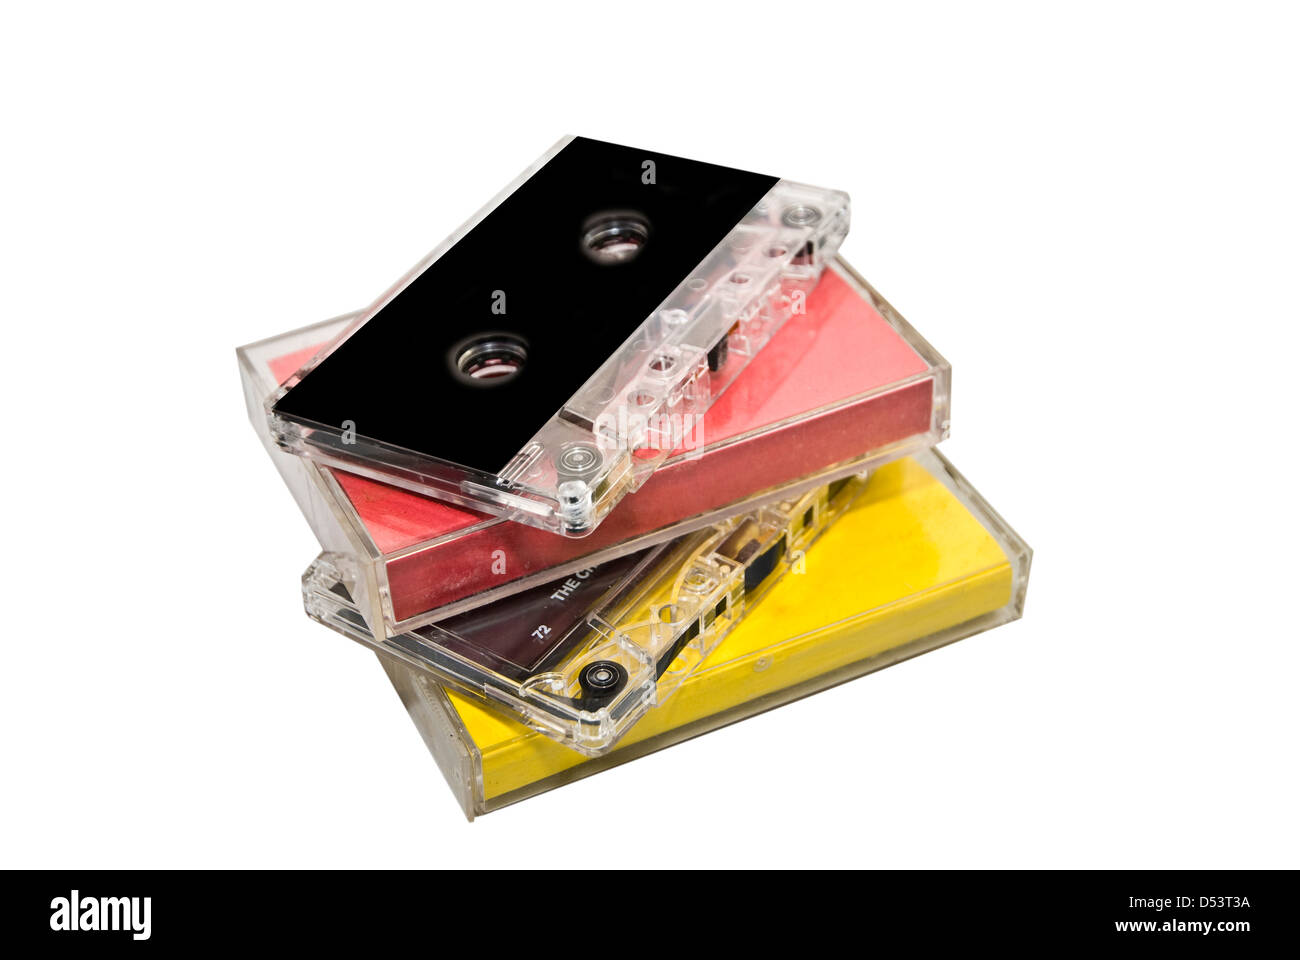 Una pila de viejas cintas de cassette con y sin cajas de plástico. Foto de stock